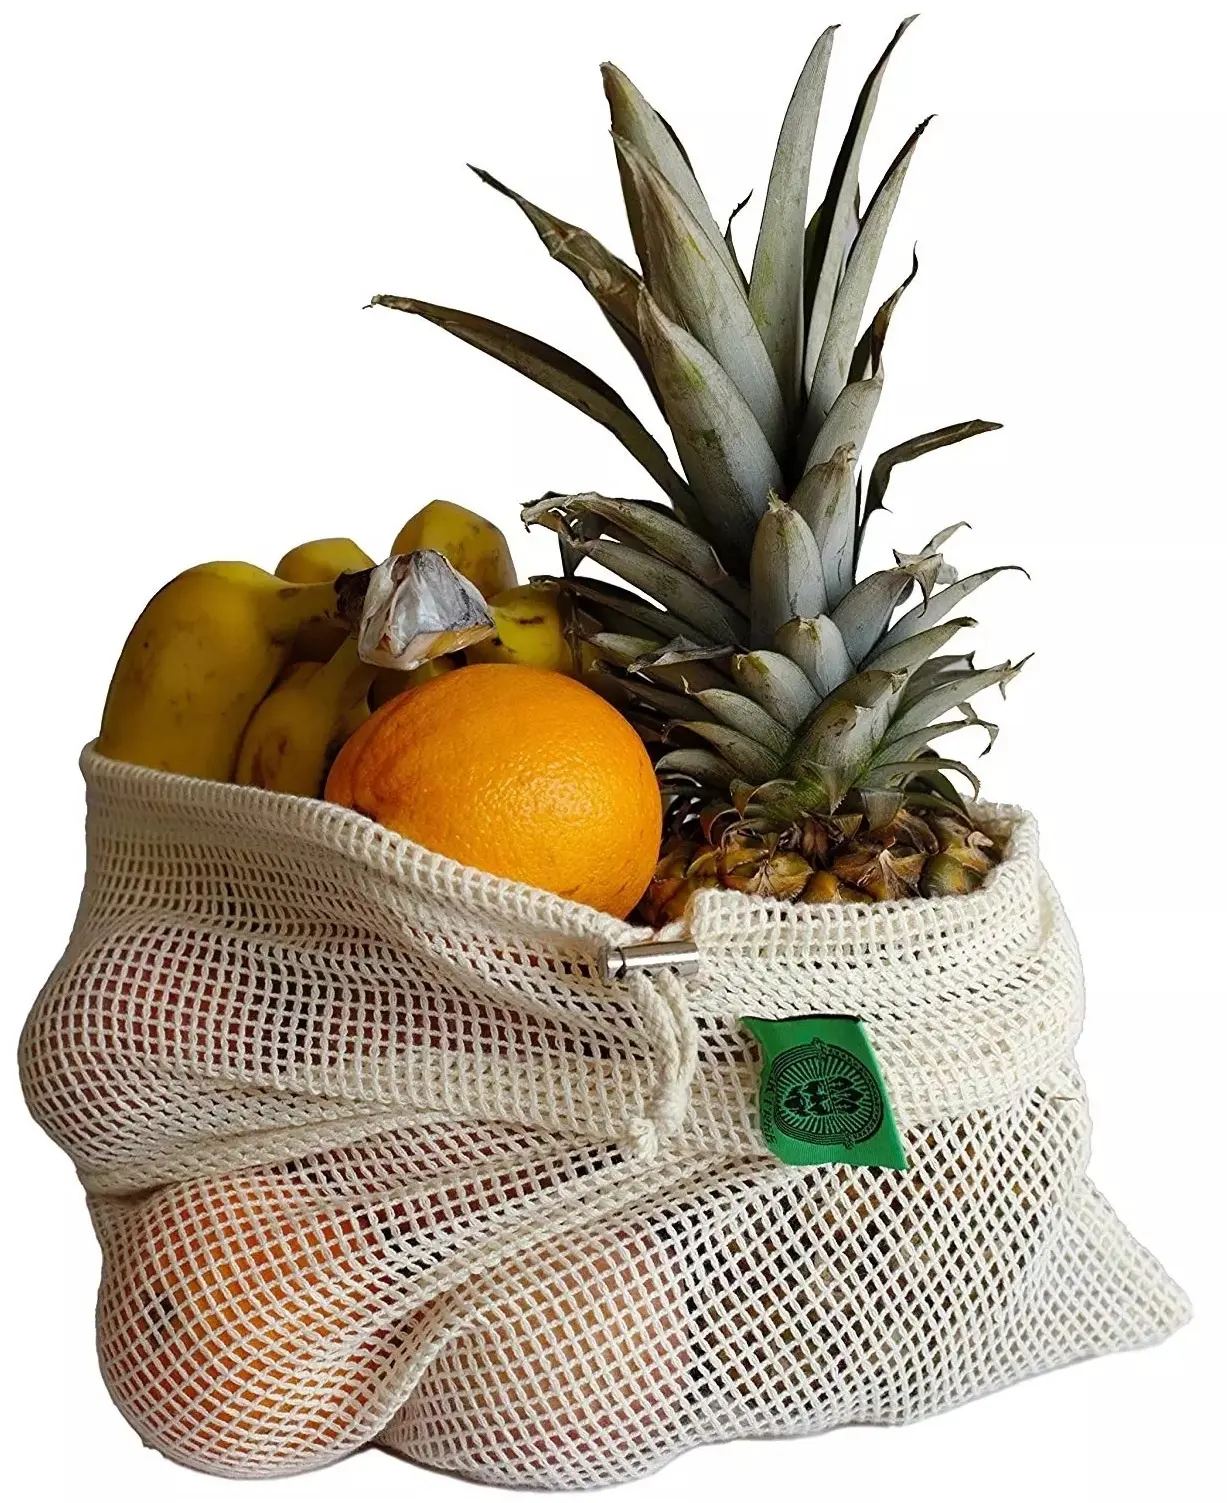 Malha de algodão orgânico natural, malha, saco para embalagem de alimentos